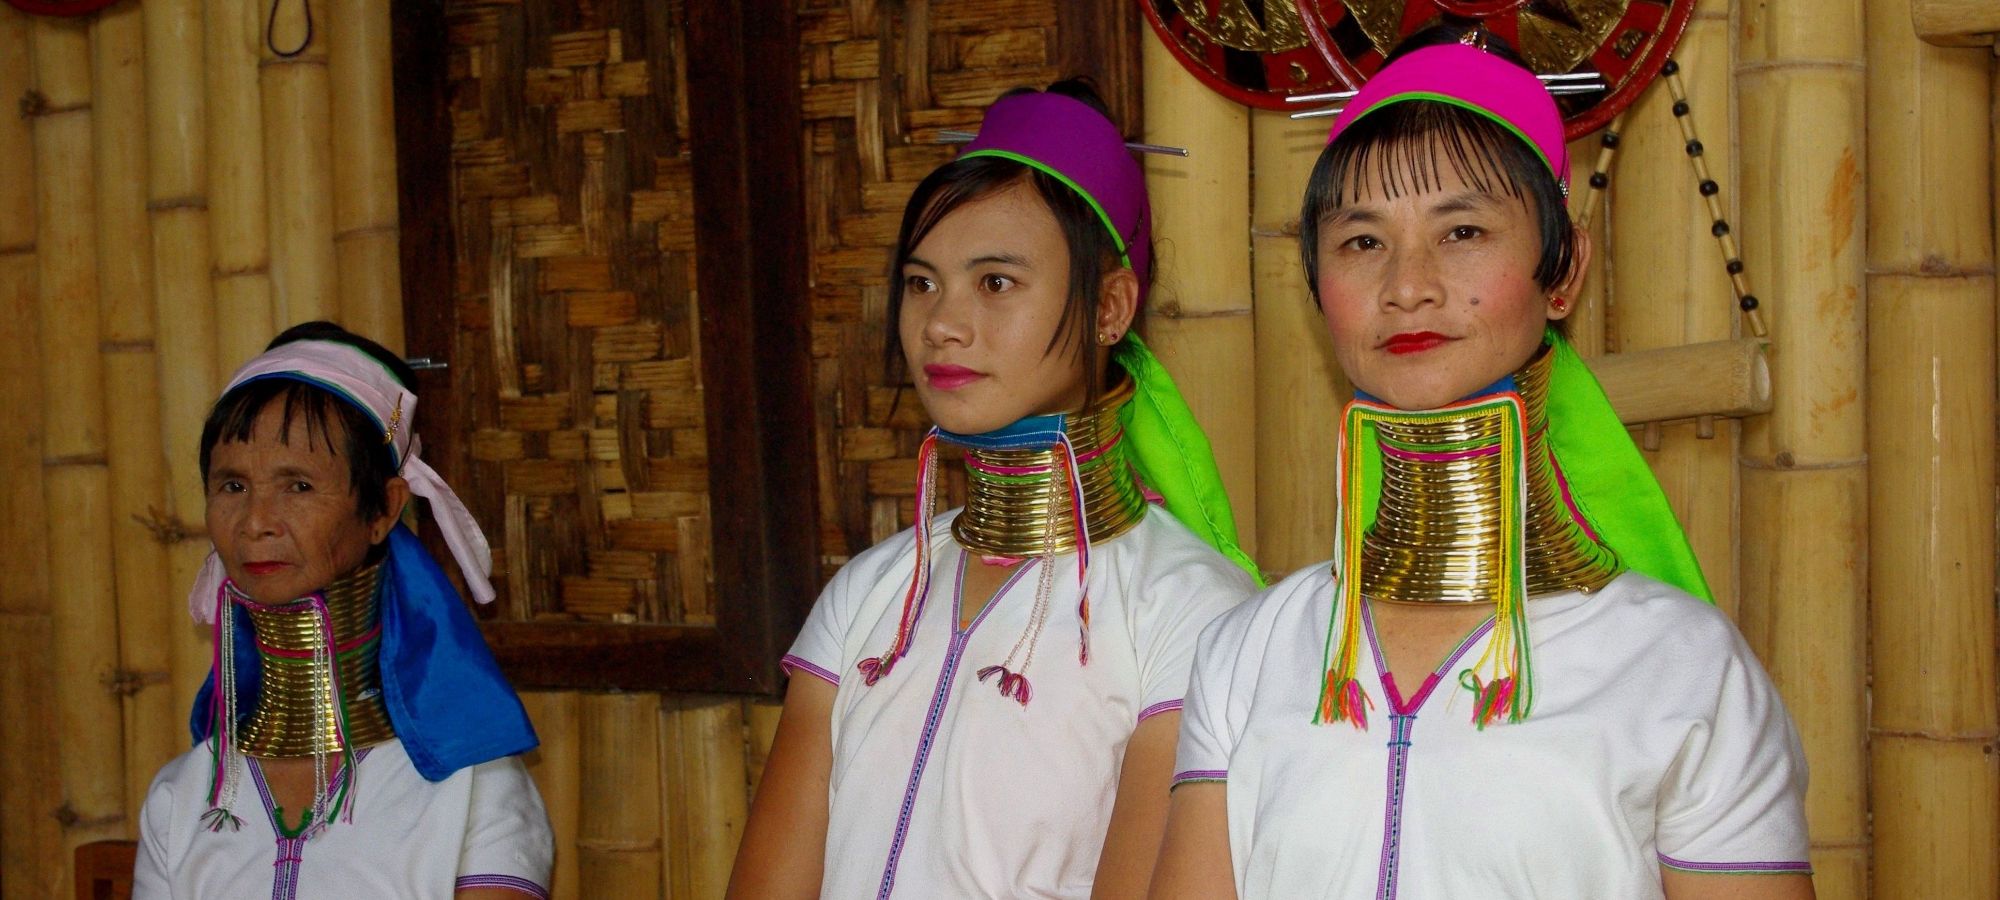 Long neck Padaung women, Inle Lake, Myanmar